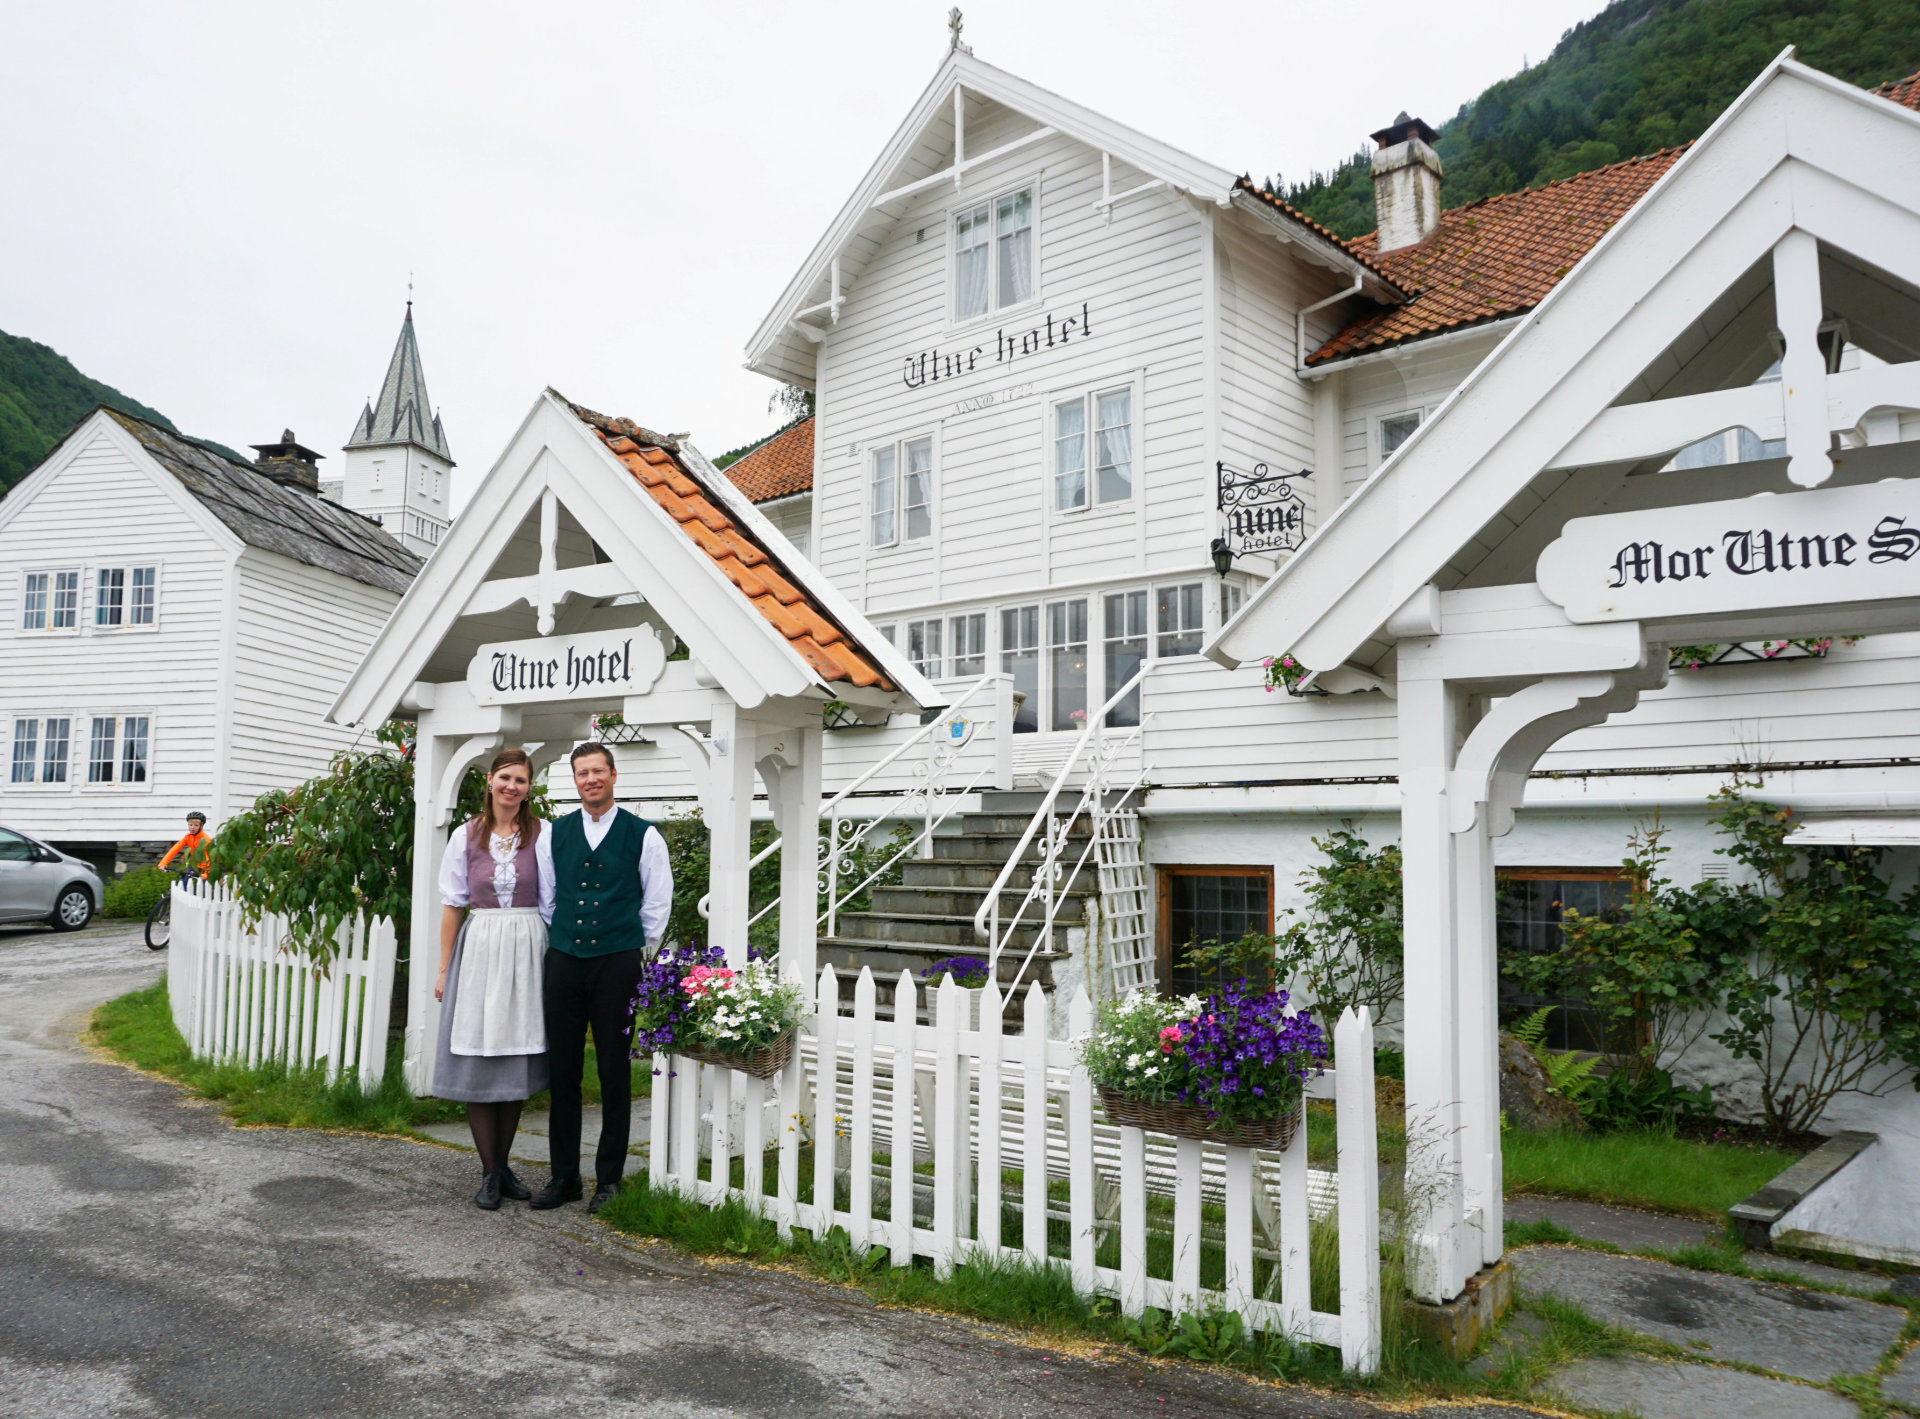 Kresne svigerforeldre? Gi bort et gavekort på et historisk overnattingssted, som Utne Hotel i Hardanger. 